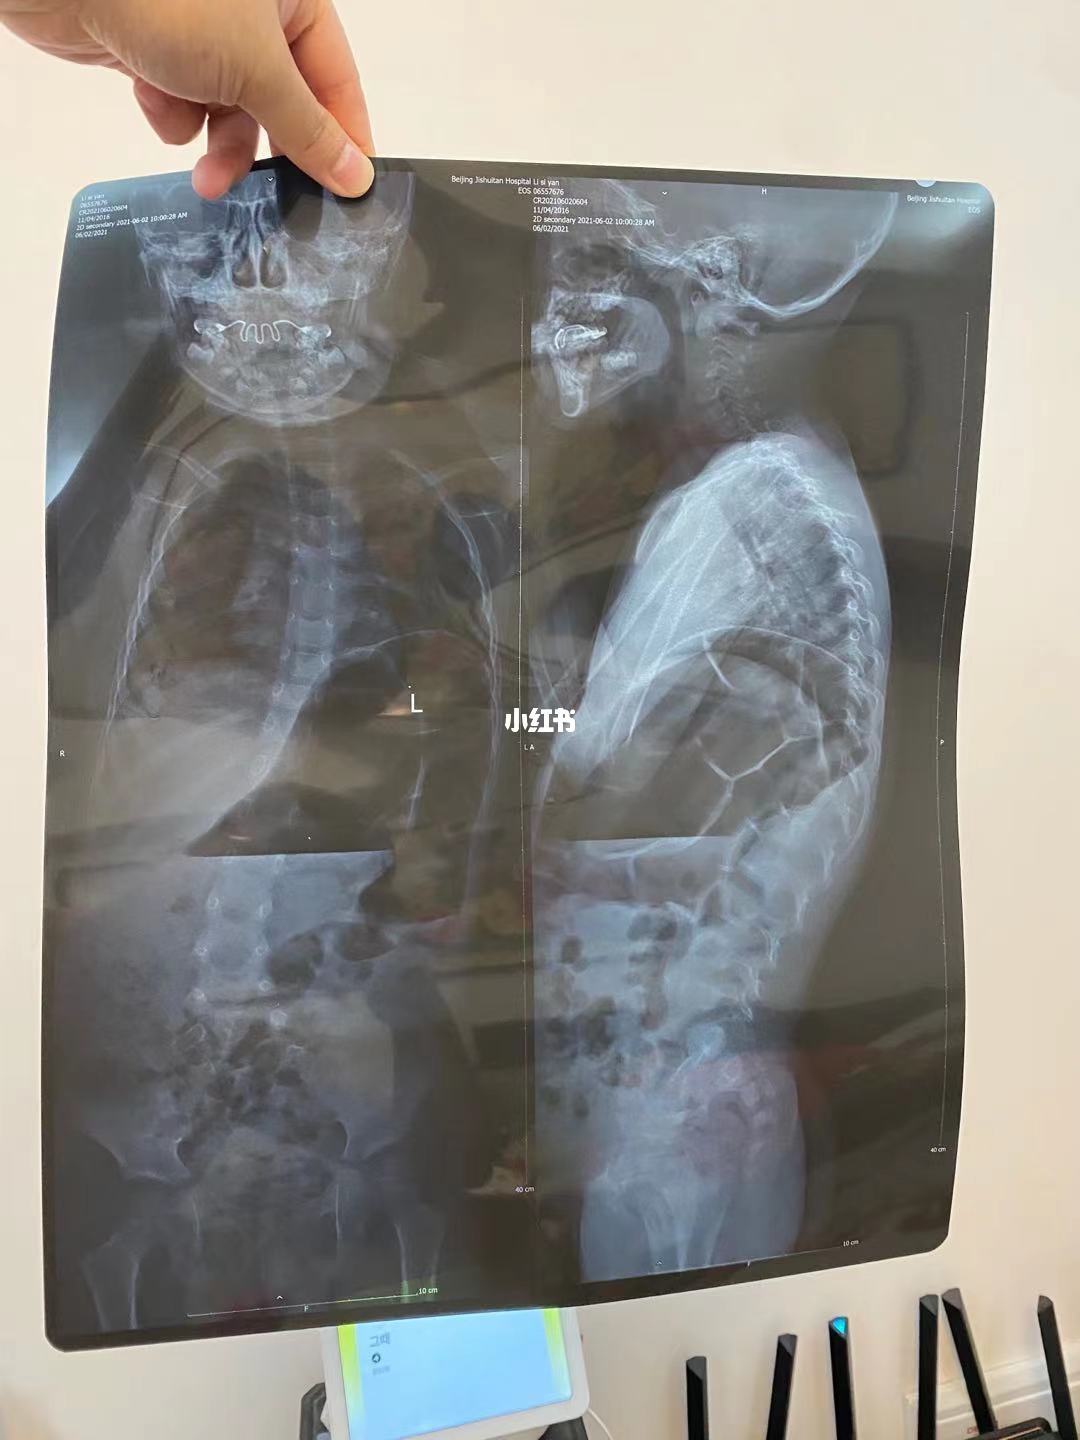 积水潭医院骨科黄牛挂号就是靠谱；X光片、CT、核磁有什么区别?看病用哪个好?一个比喻你就明白了的简单介绍